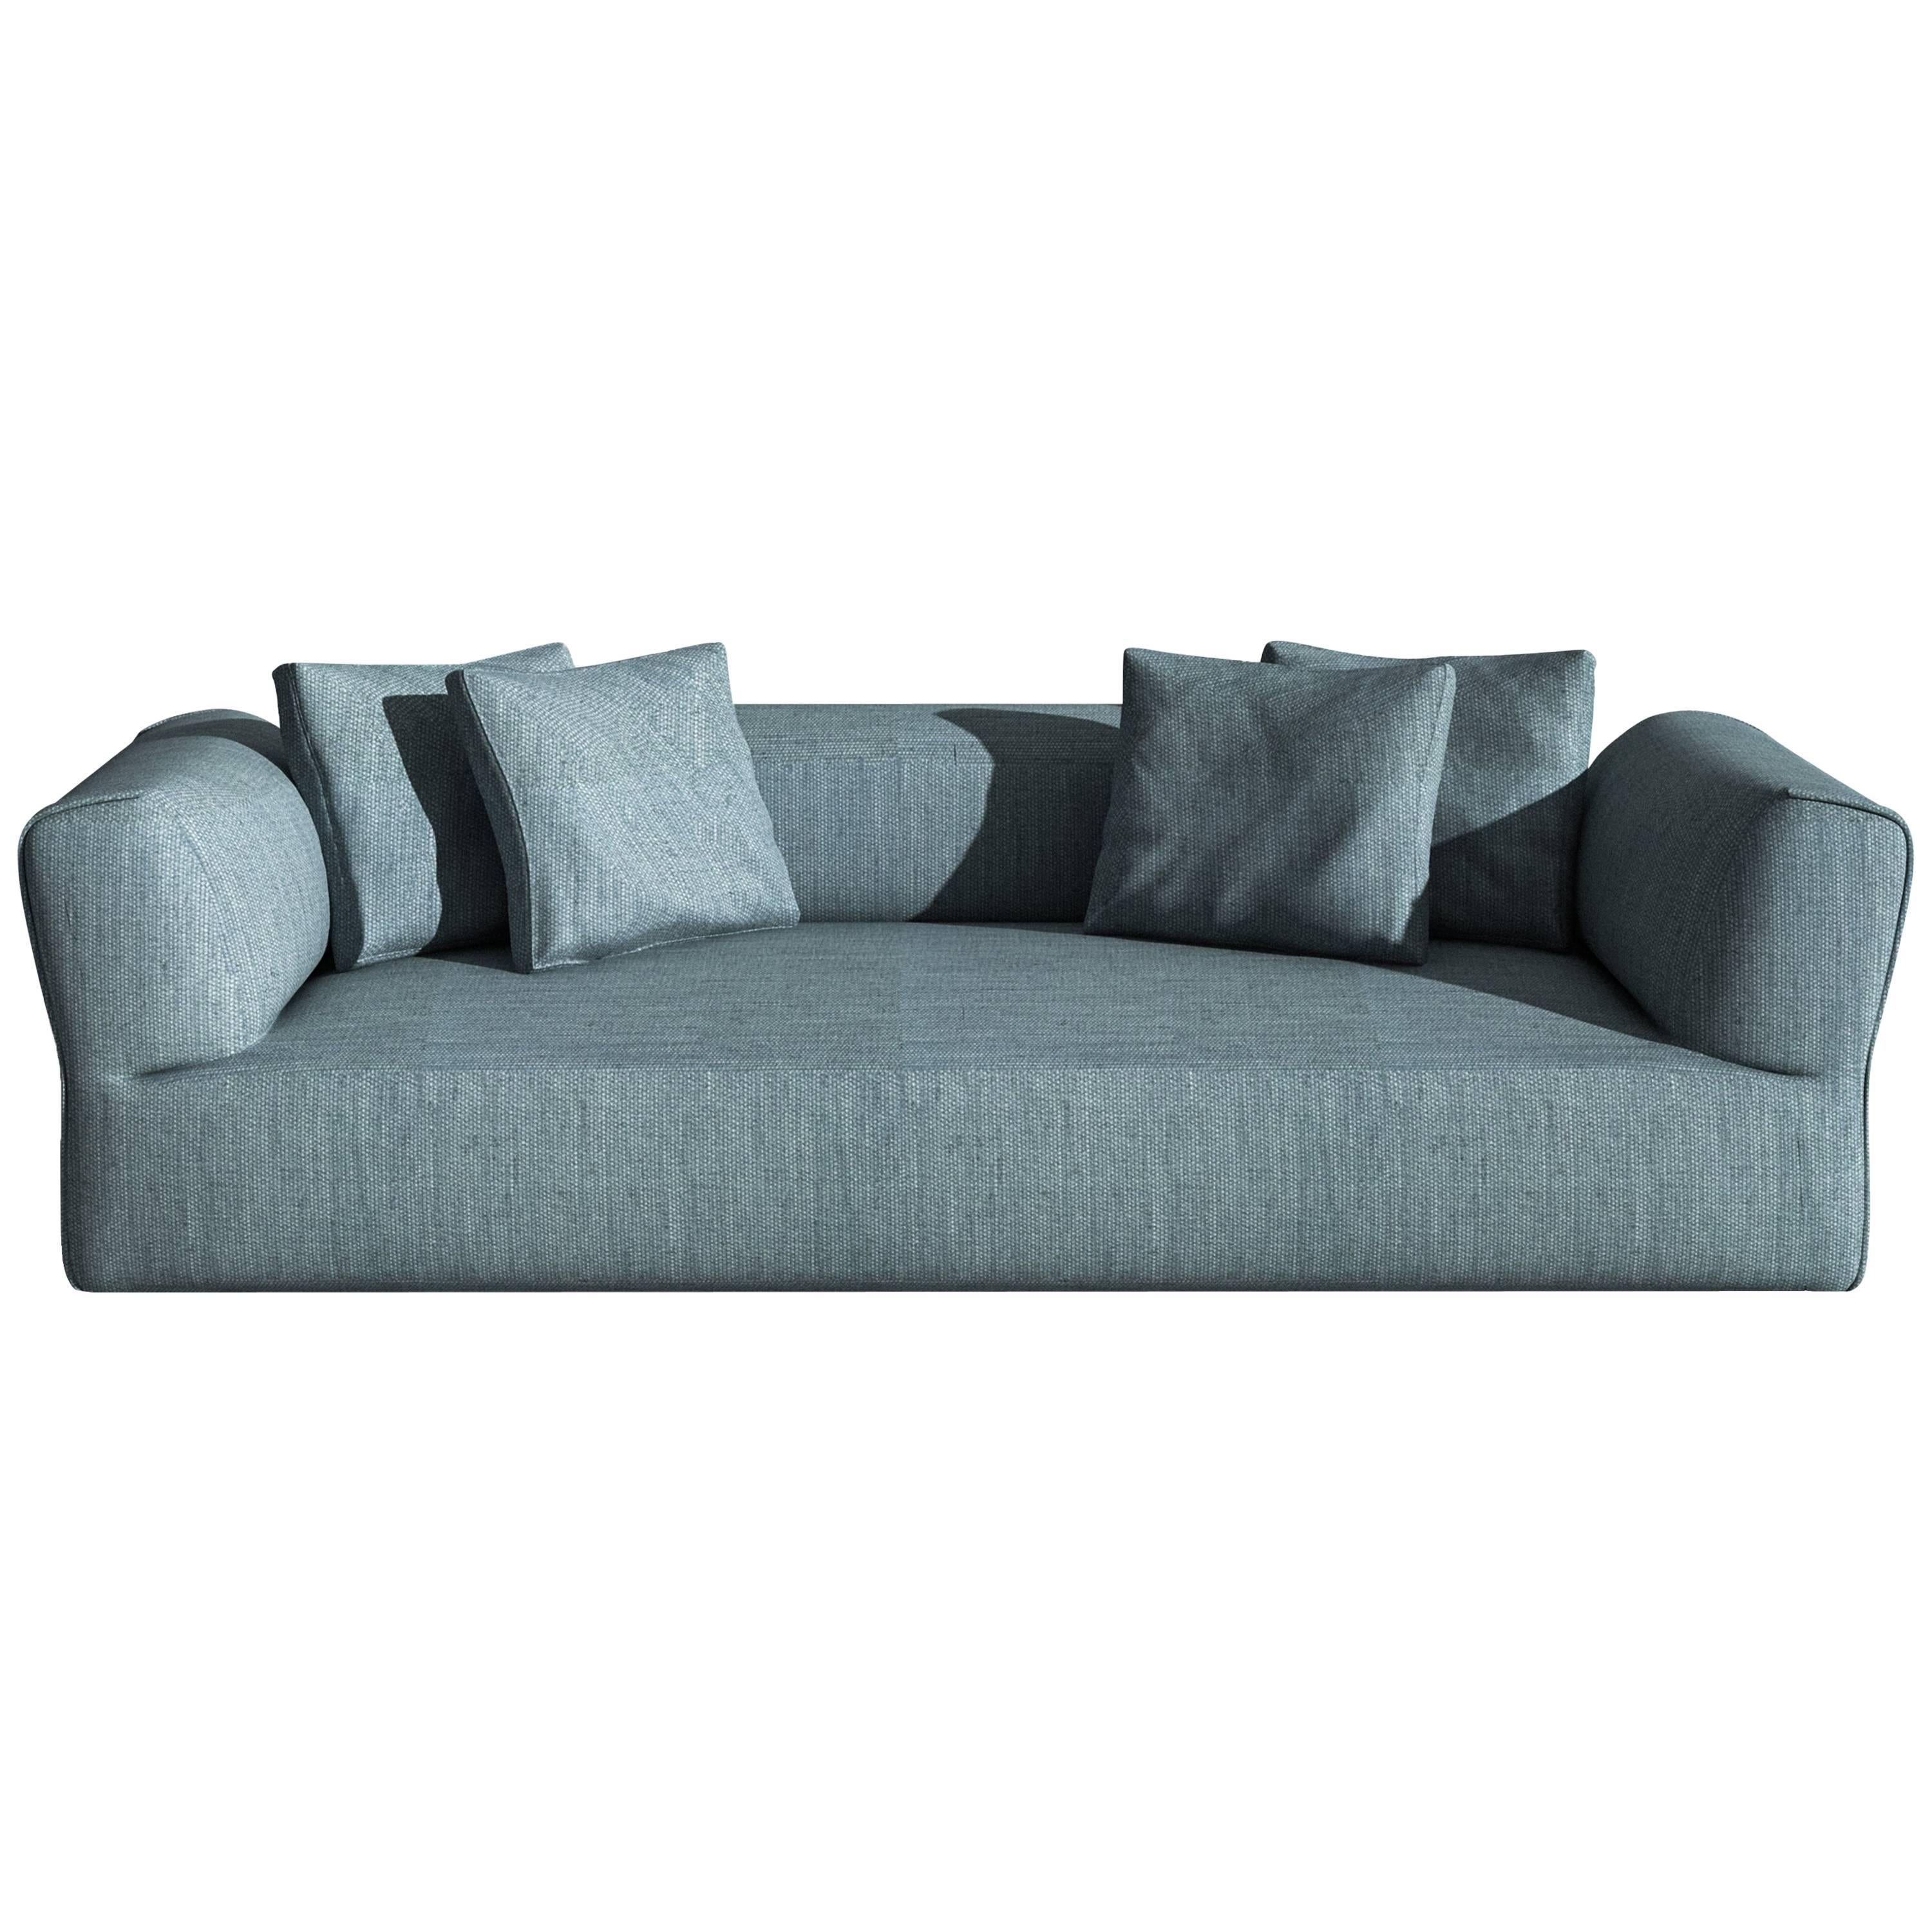 Dreisitziges, sechssitziges Sofa "Rever" von Roberto Palomba Driade, 2017